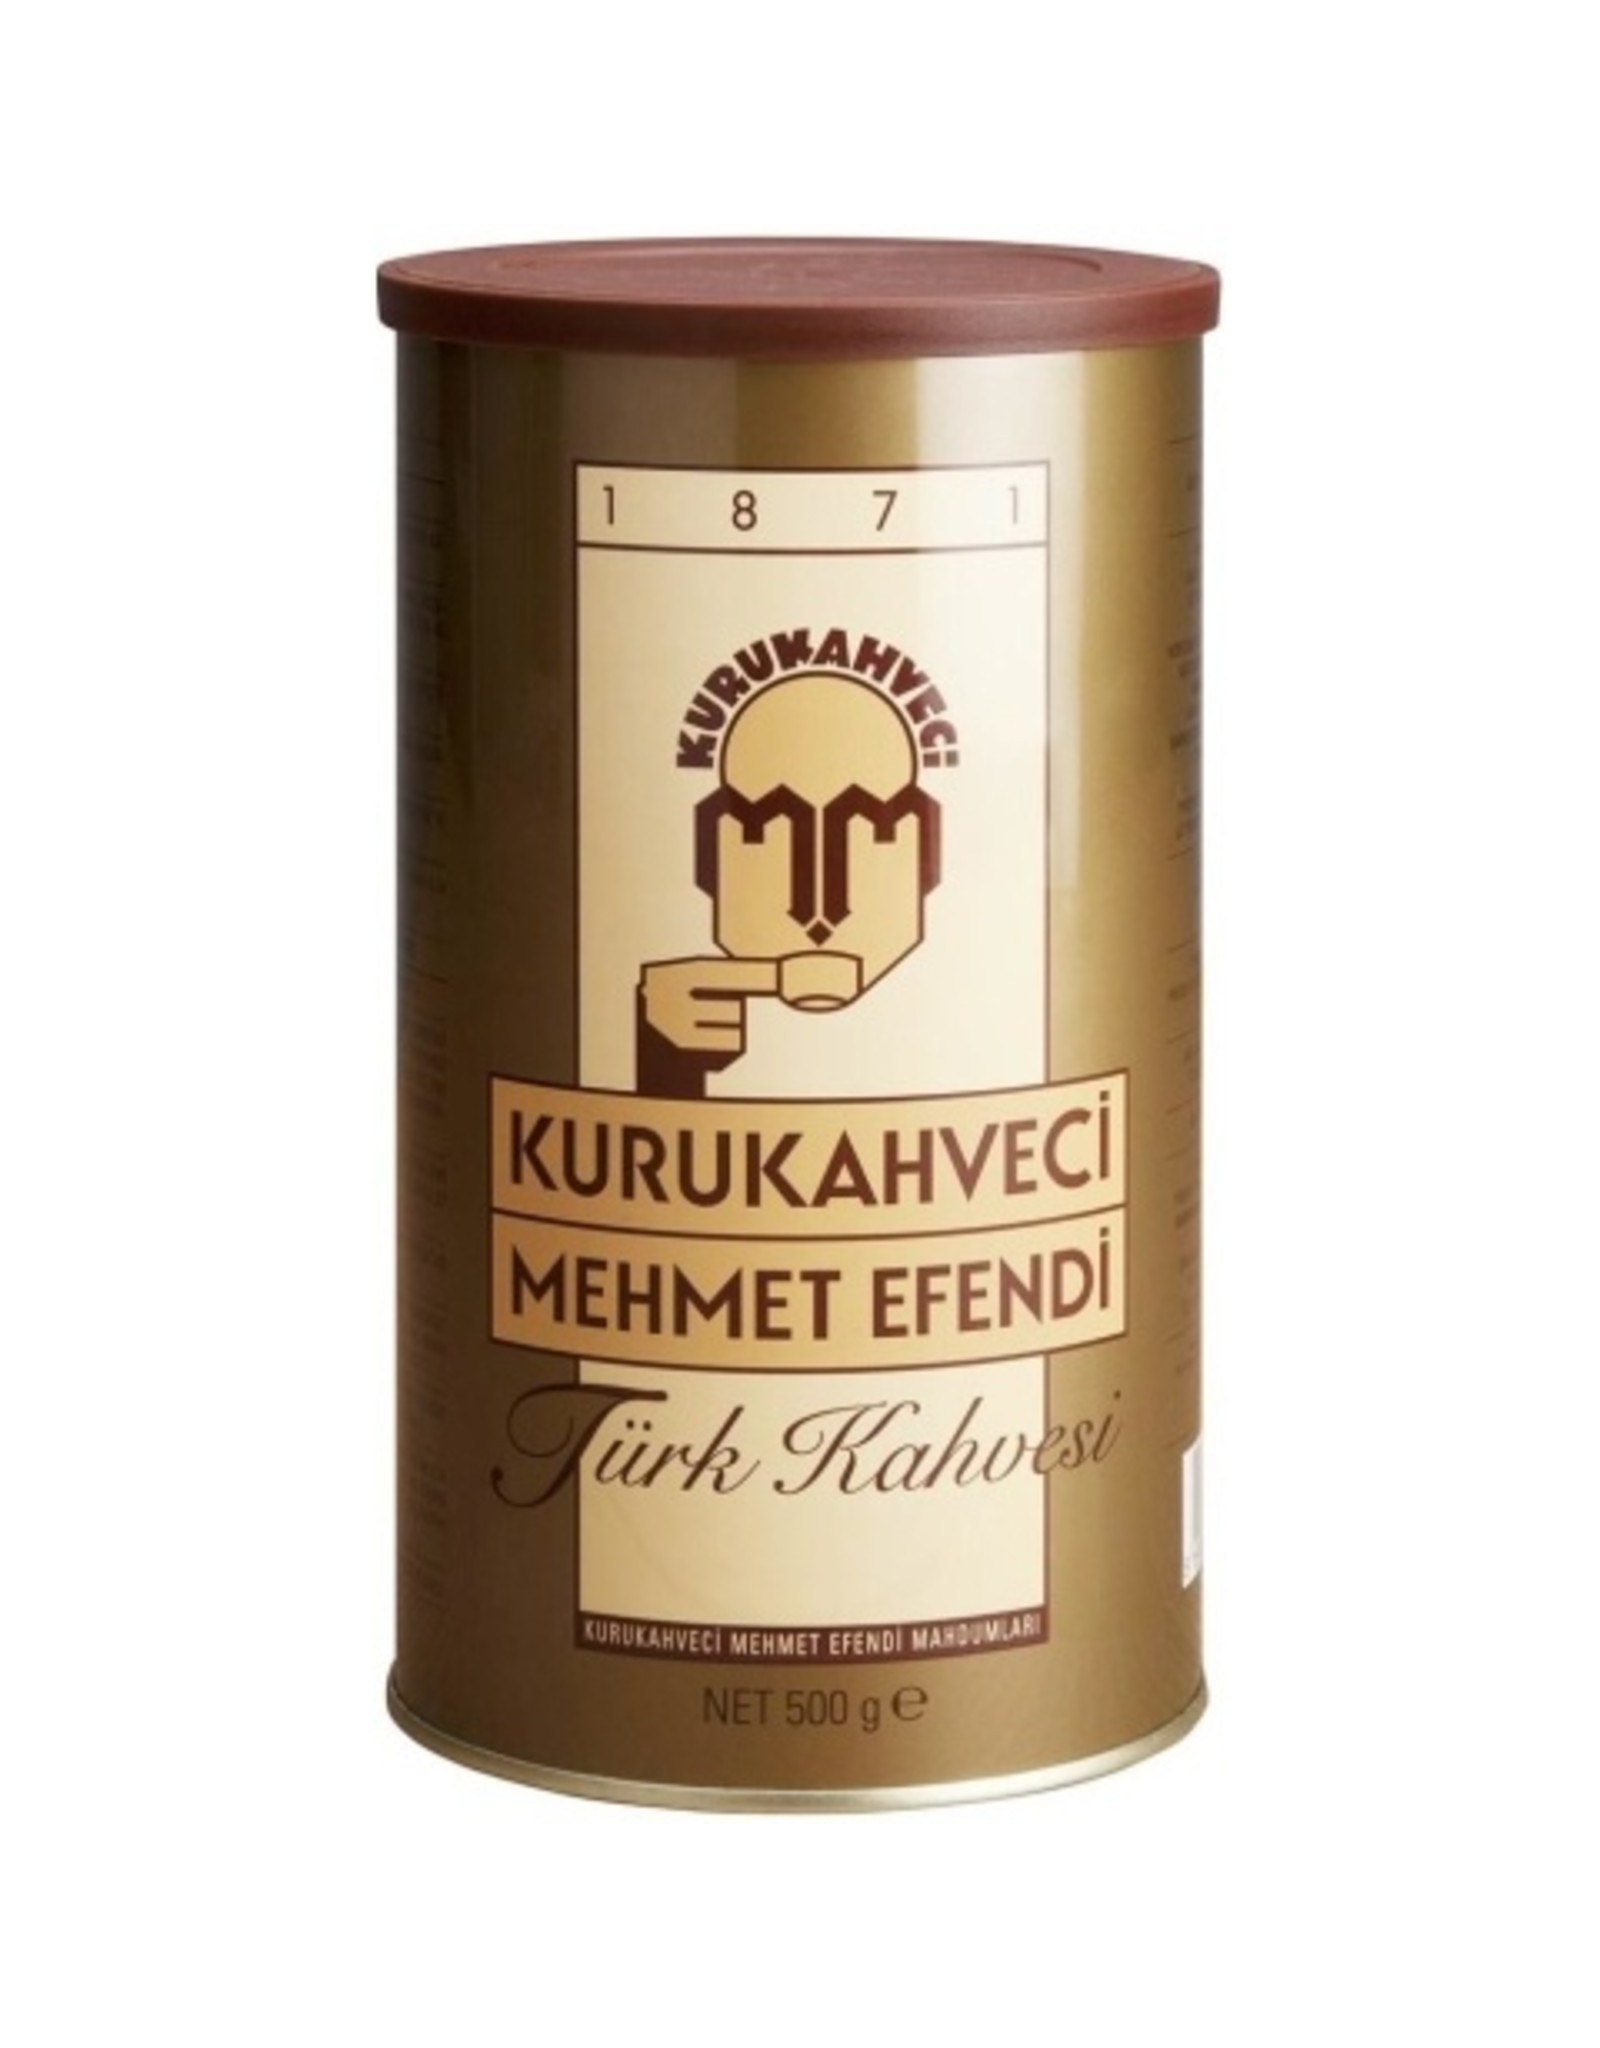 Turk kahvesi Mehmet Efendi 500g